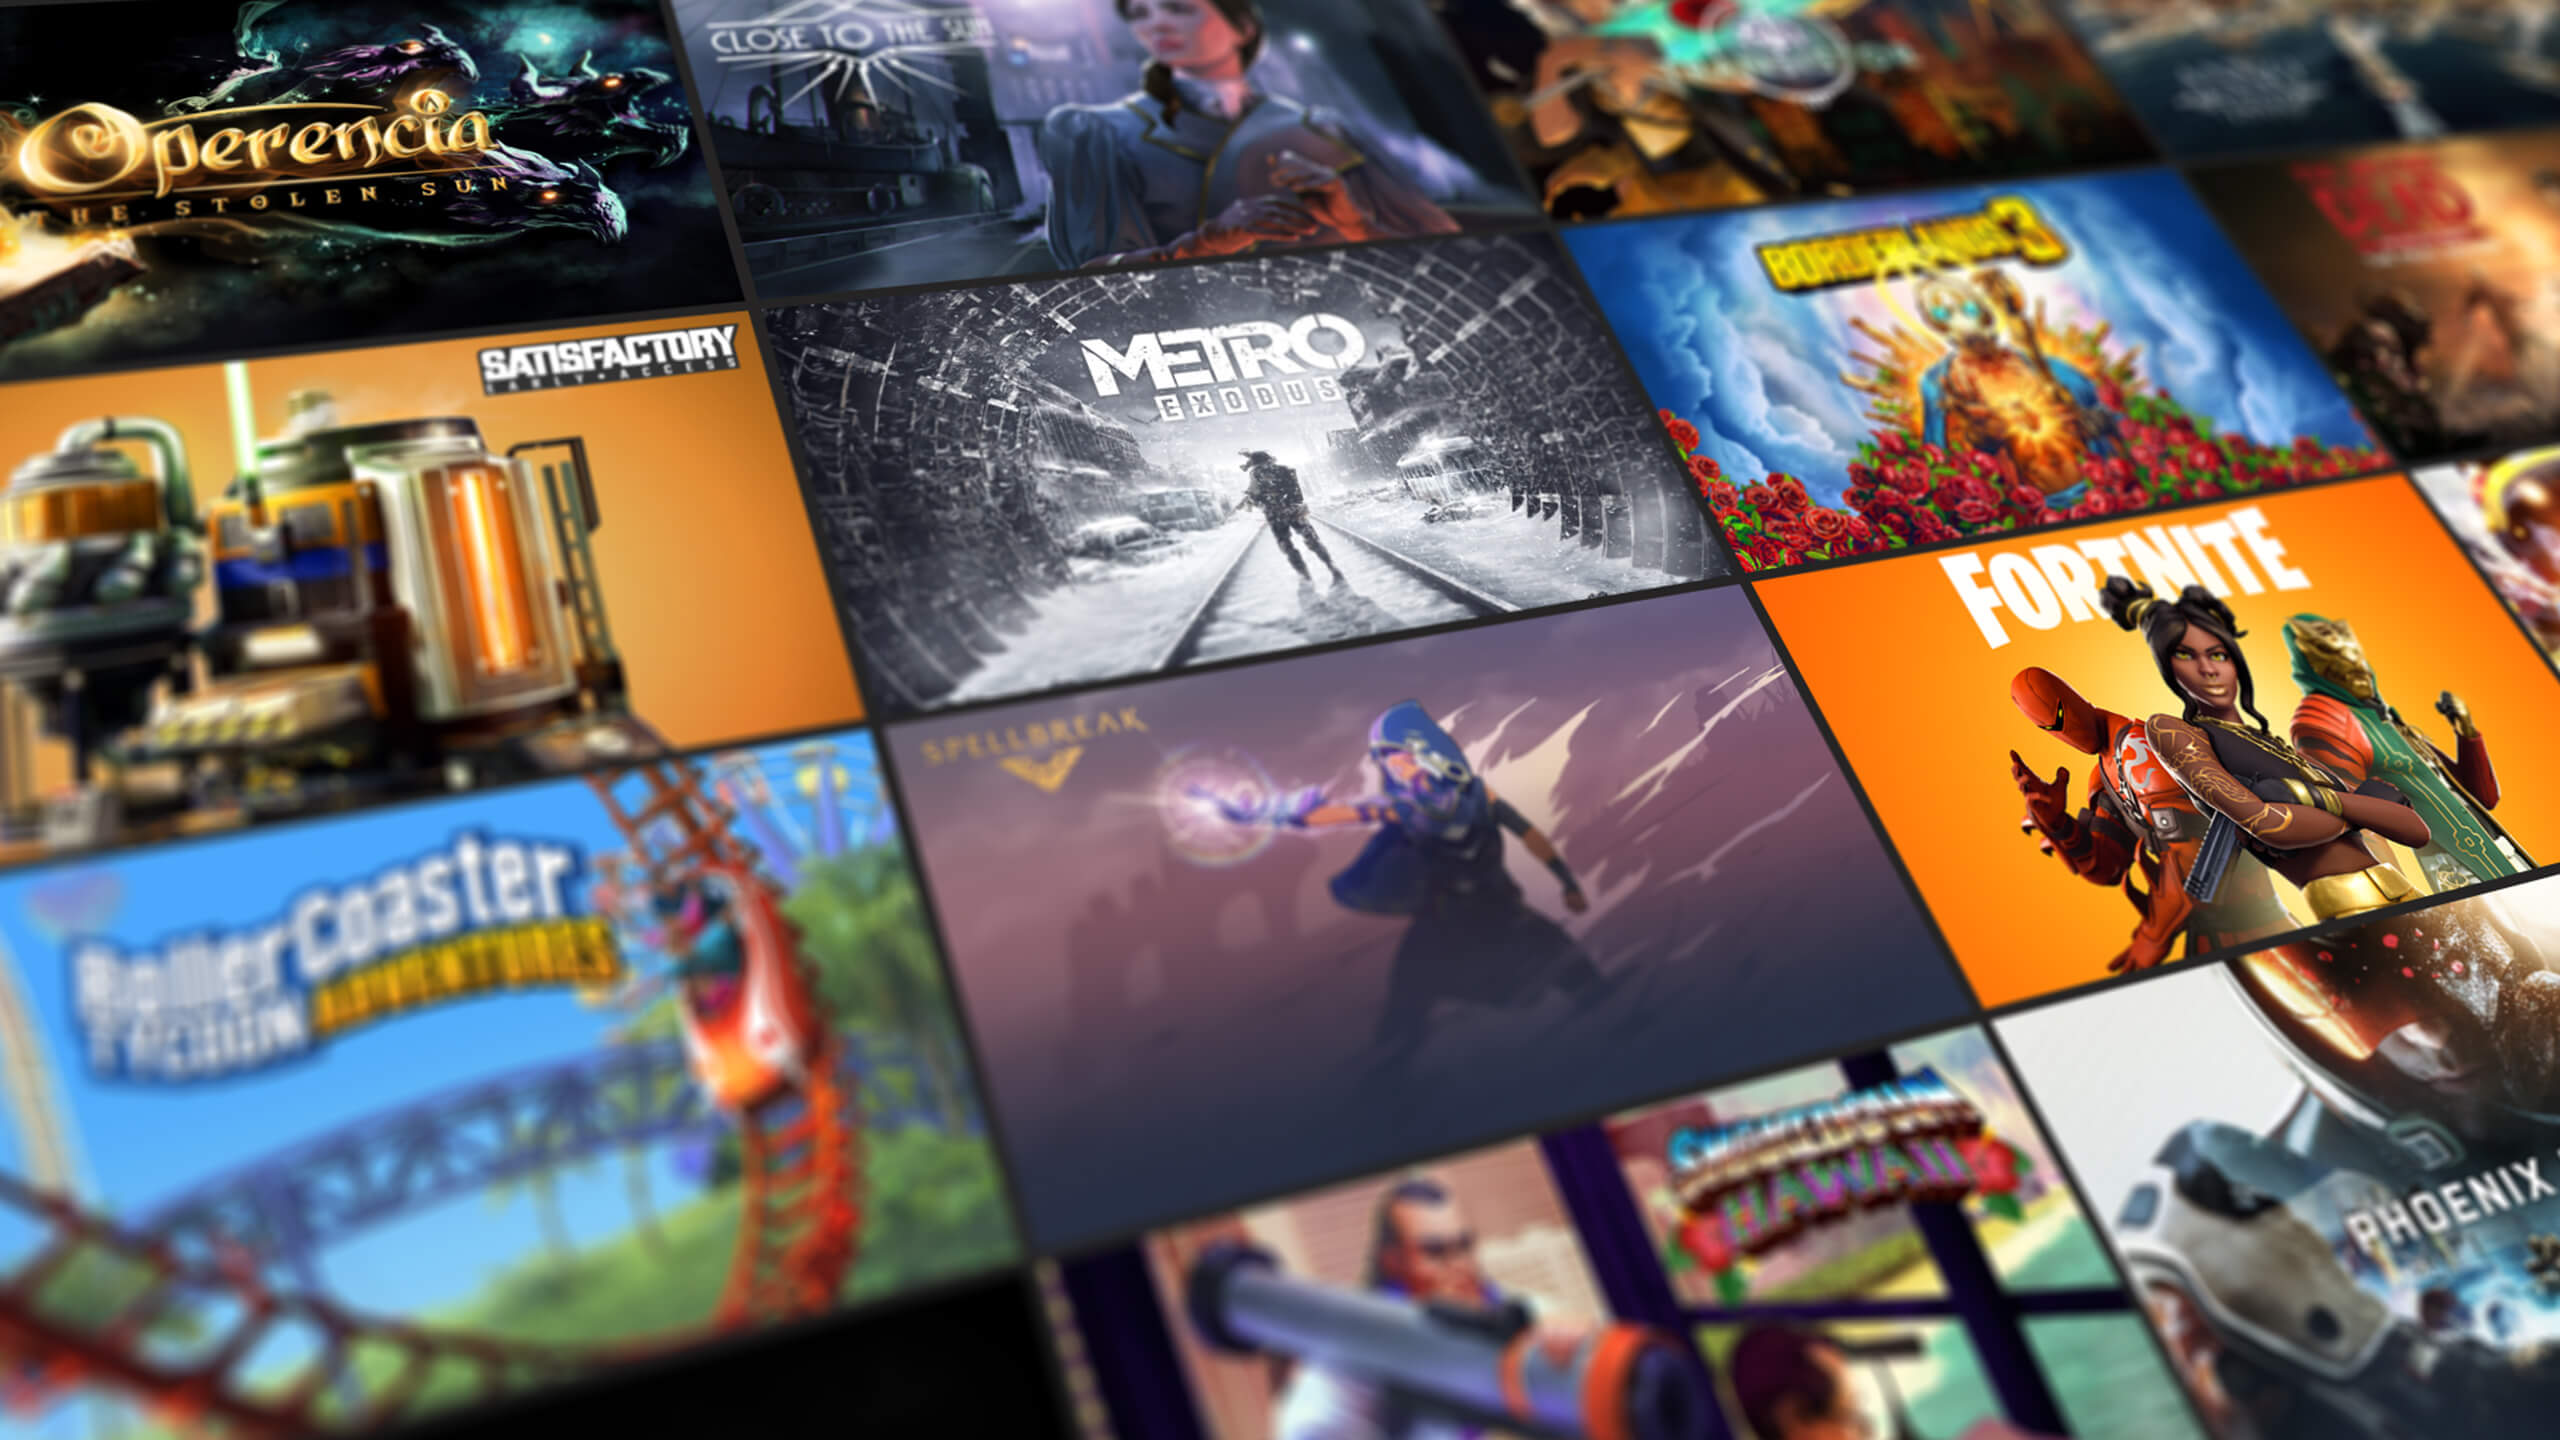 Epic Games Store entrega dois novos jogos de graça nesta semana para PC;  Soulstice e mais